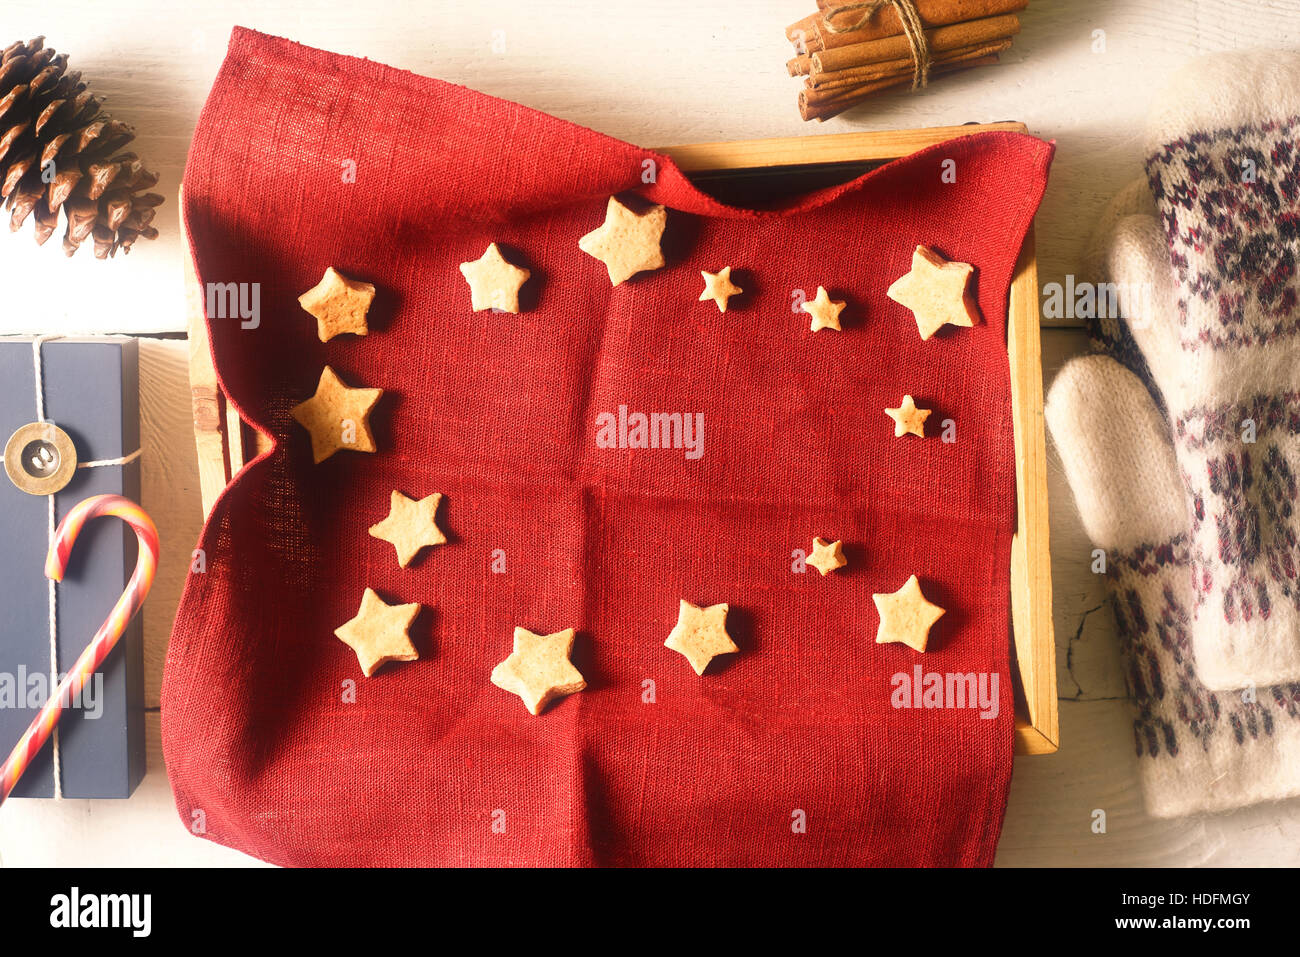 Weihnachtsgebäck auf die rote Serviette in das Fach mit verschiedenen Accessoires Draufsicht Stockfoto